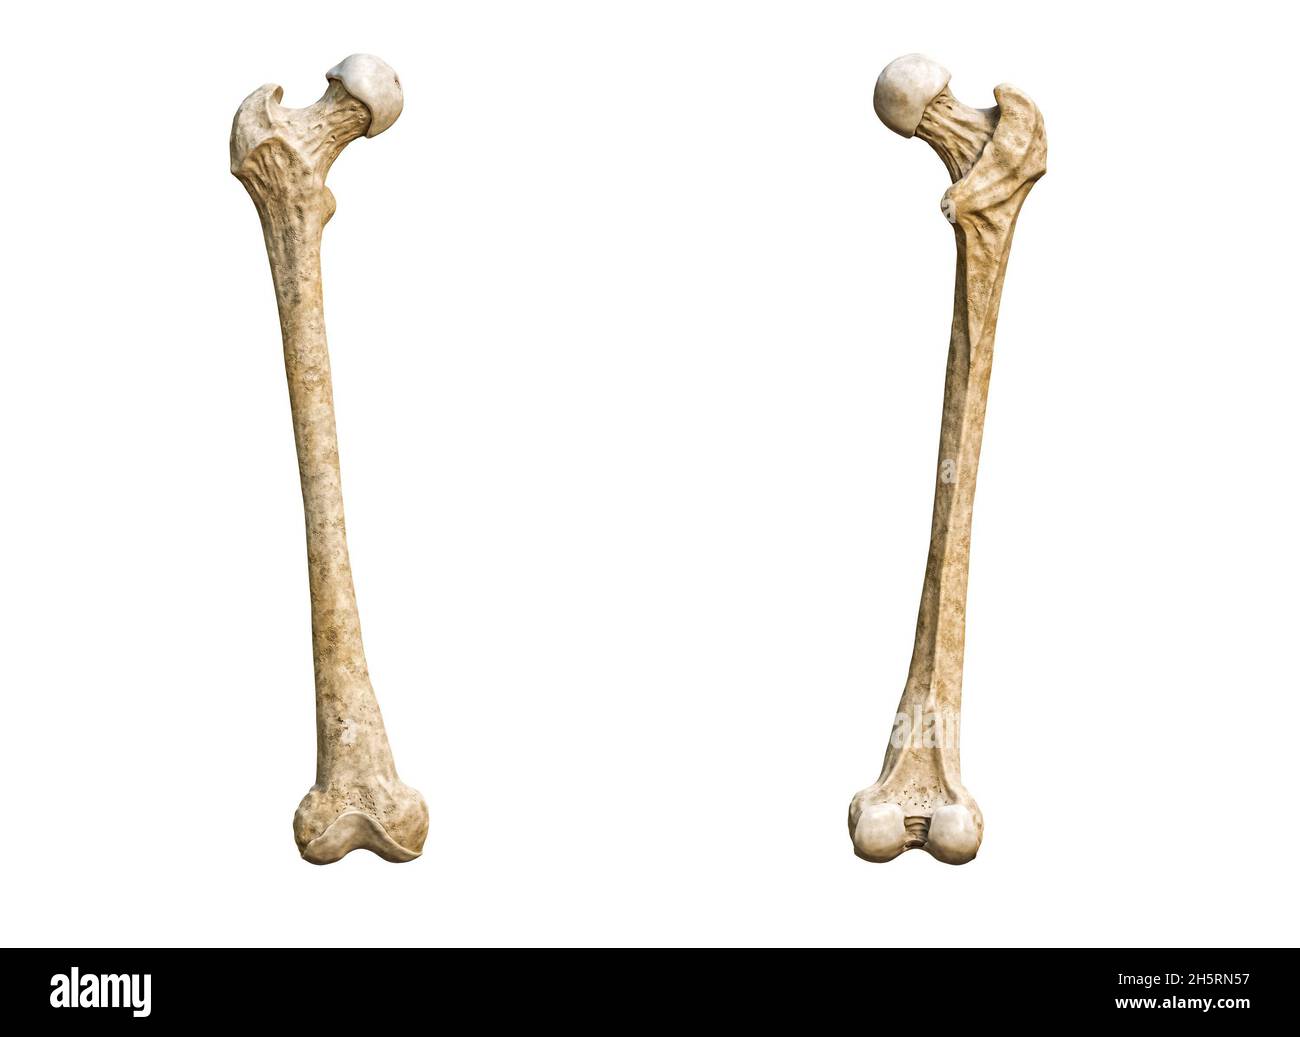 Кости на белом фоне. Кость человека на белом фоне. Бедренная кость страуса. Бедренная кость человека фото на белом фоне.